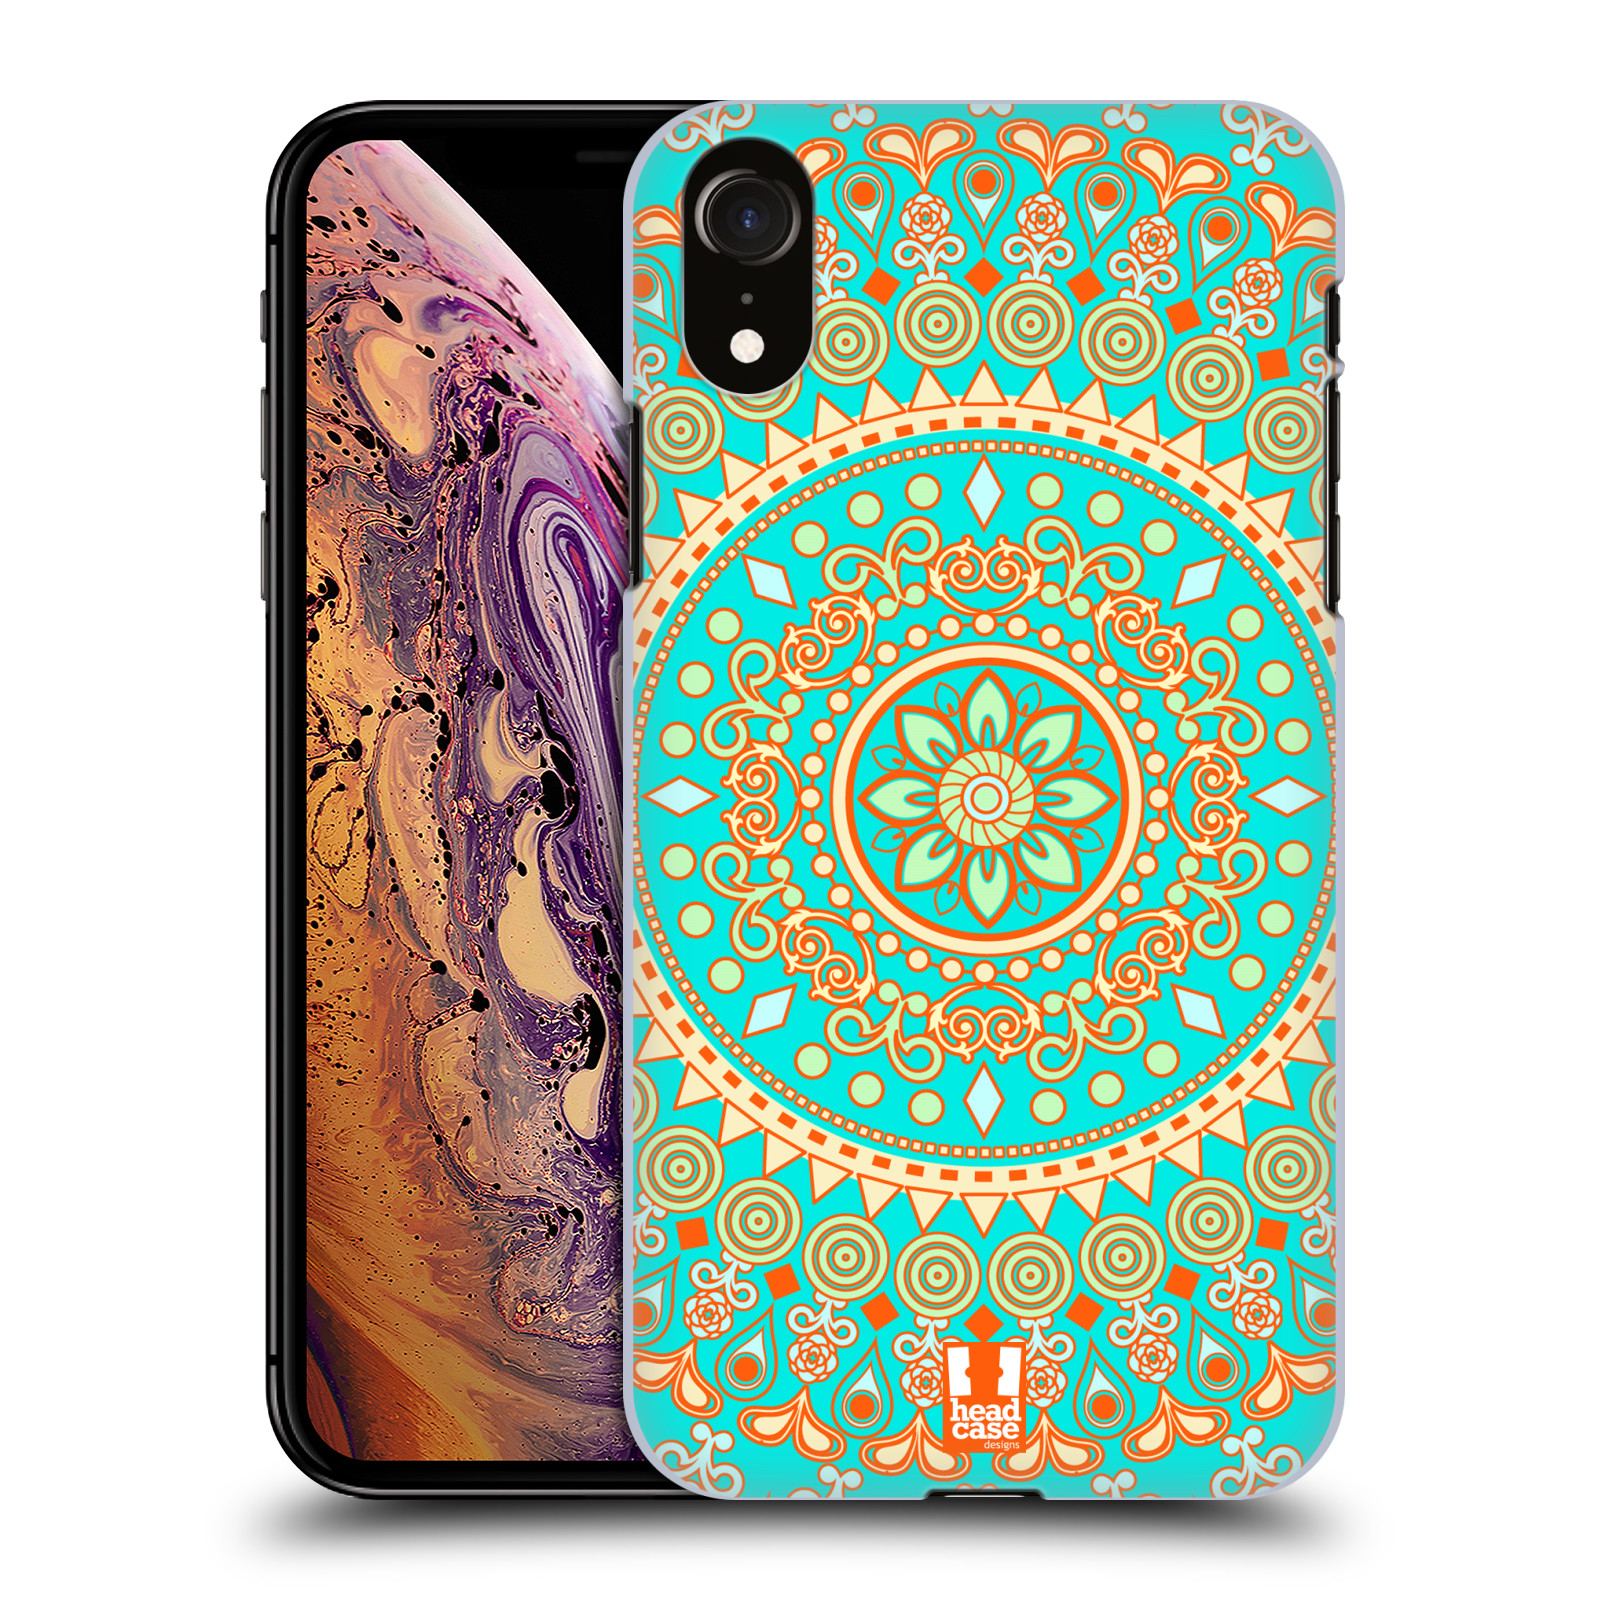 HEAD CASE plastový obal na mobil Apple Iphone XR vzor Indie Mandala slunce barevný motiv TYRKYSOVÁ, ZELENÁ